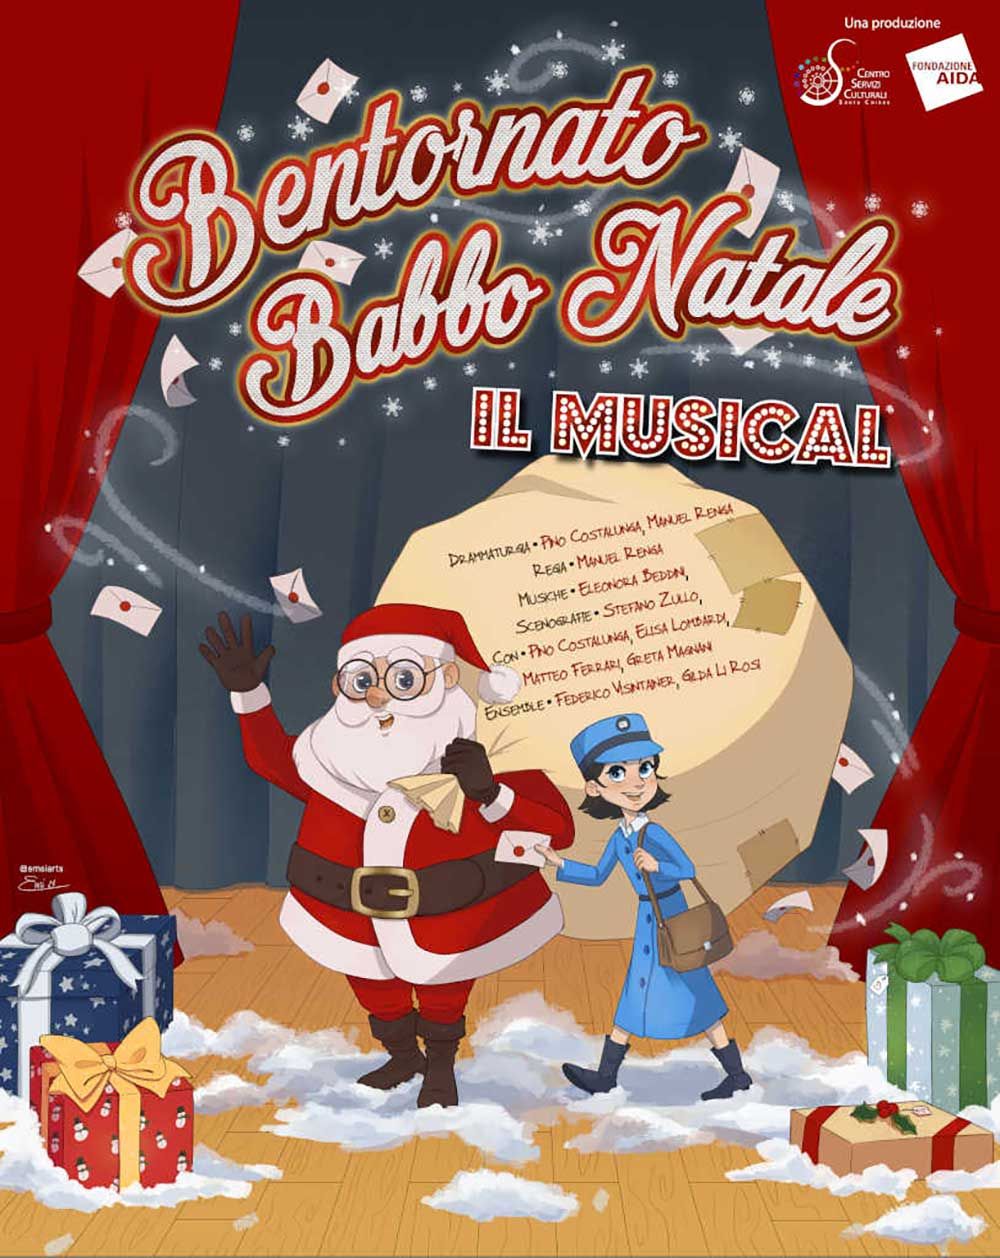 Ben-tornato-Babbo-Natale-Fondazione-Aida-musical